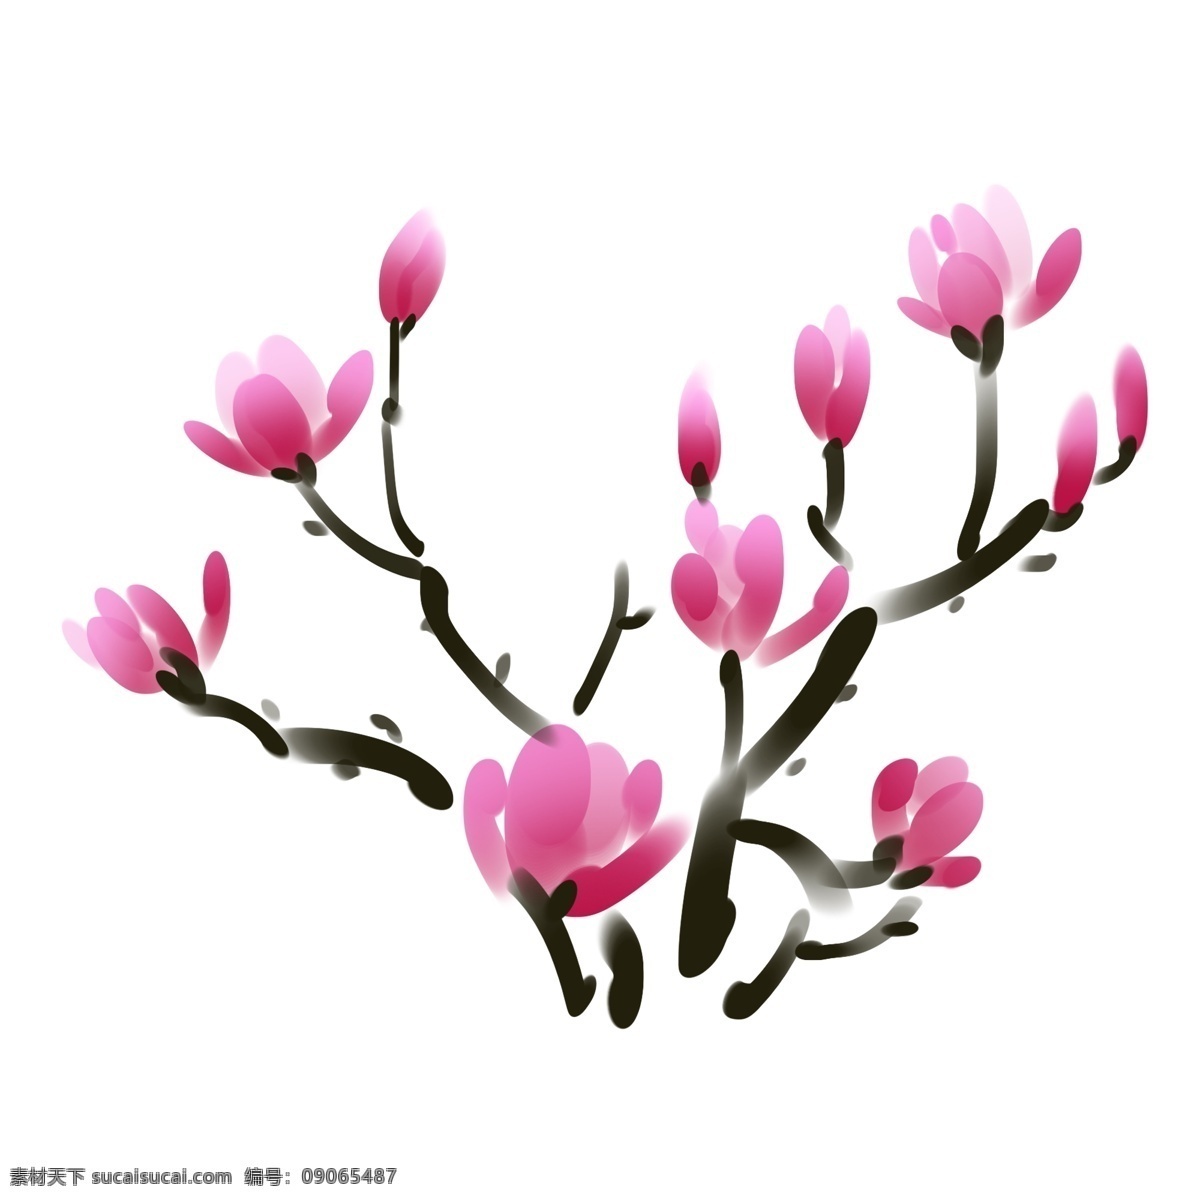 卡通 玉兰 树枝 插画 粉色的玉兰 玉兰花花枝 卡通花朵 花卉 唯美的花朵 水墨花枝插画